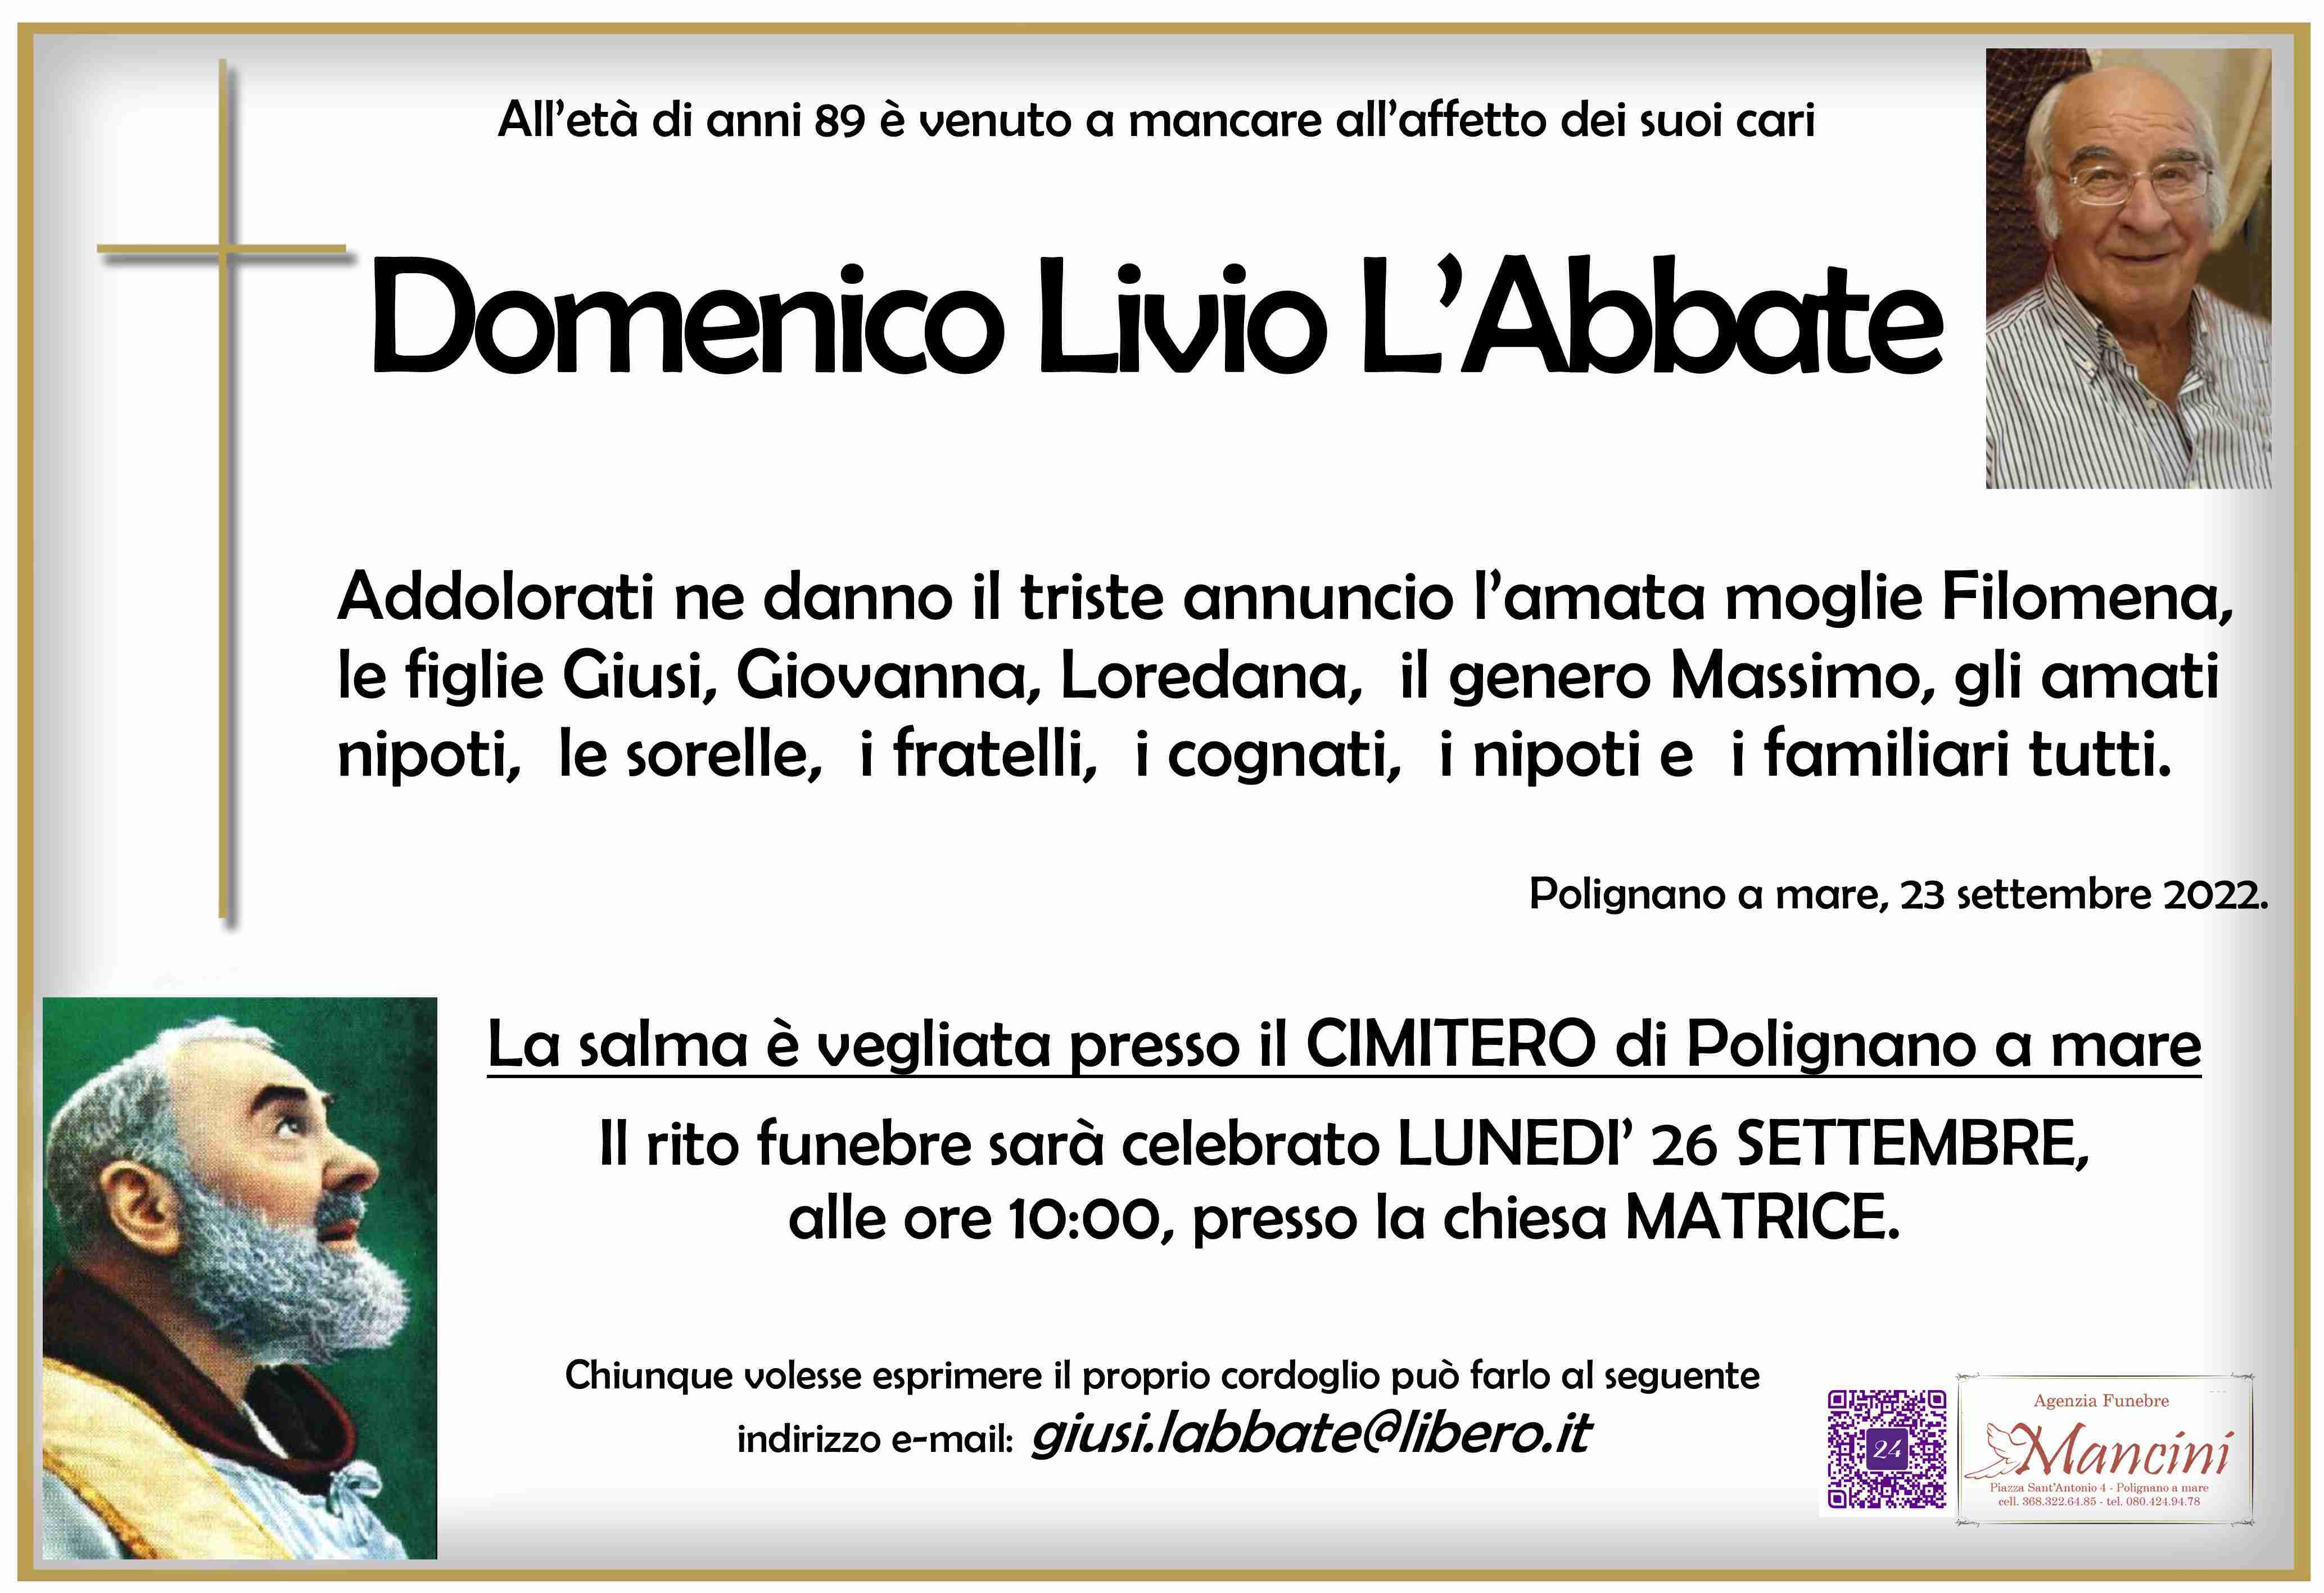 Domenico Livio L'Abbate